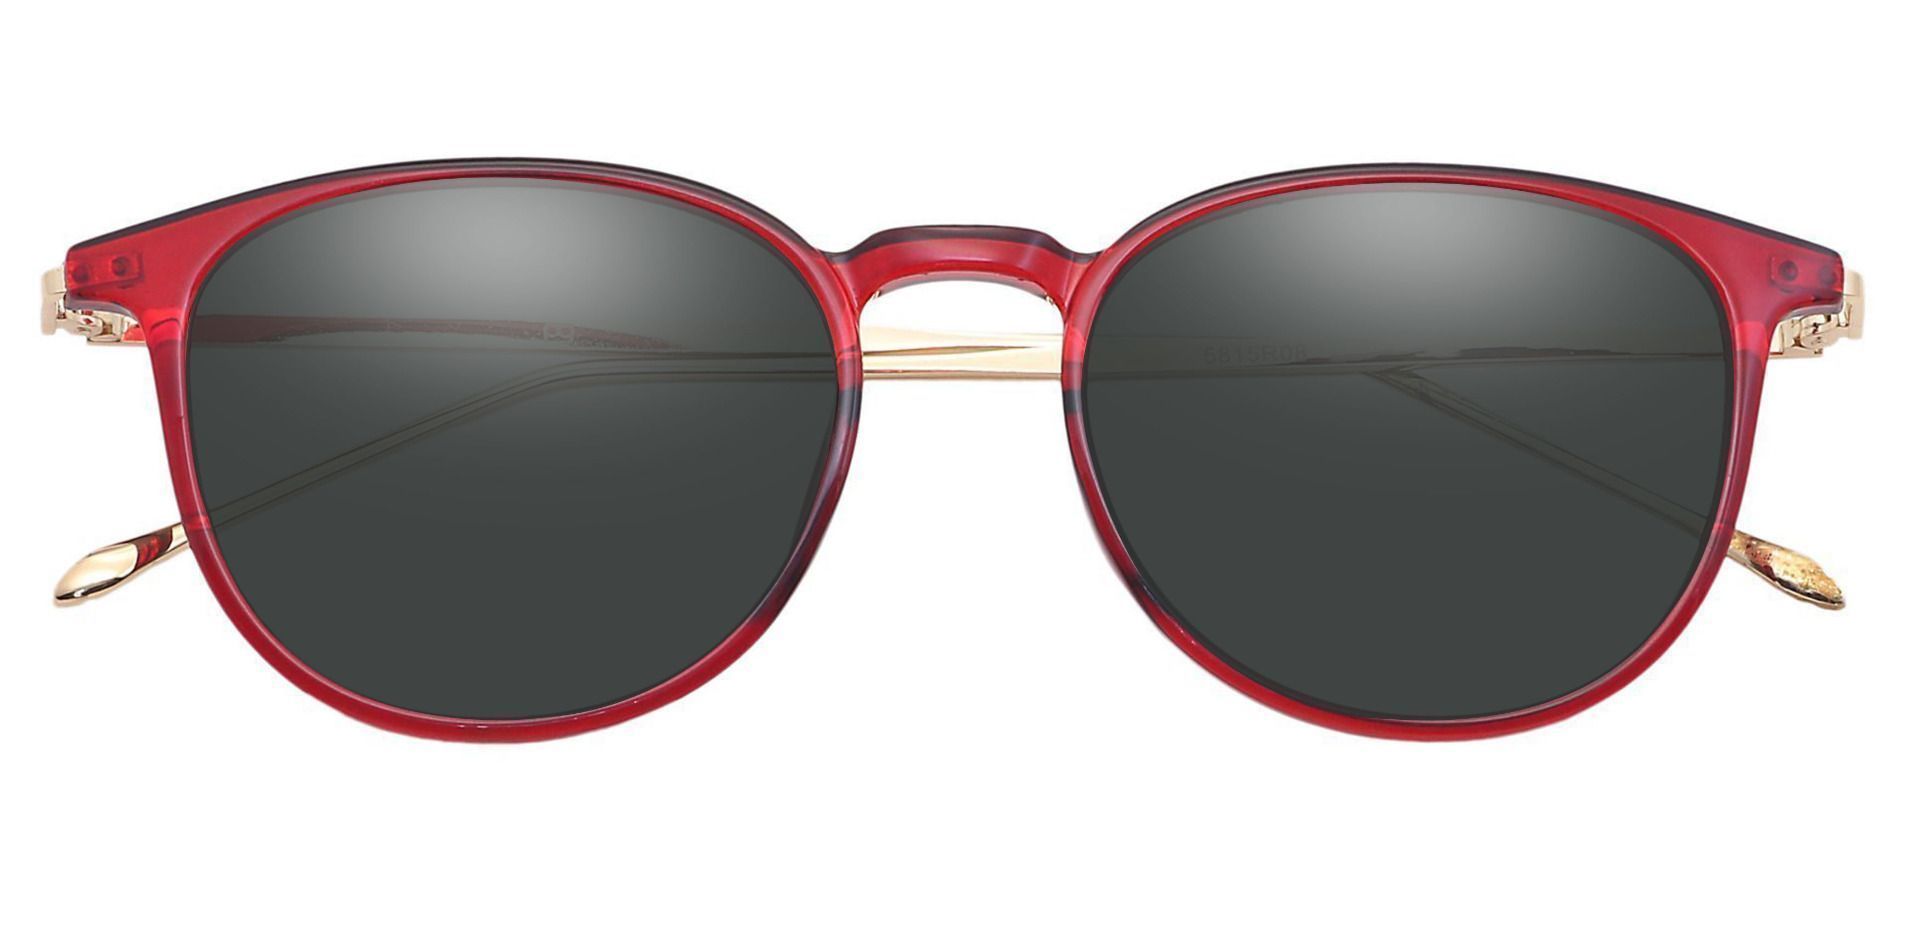 Elliott Round Prescription Sunglasses - Red Frame With Gray Lenses